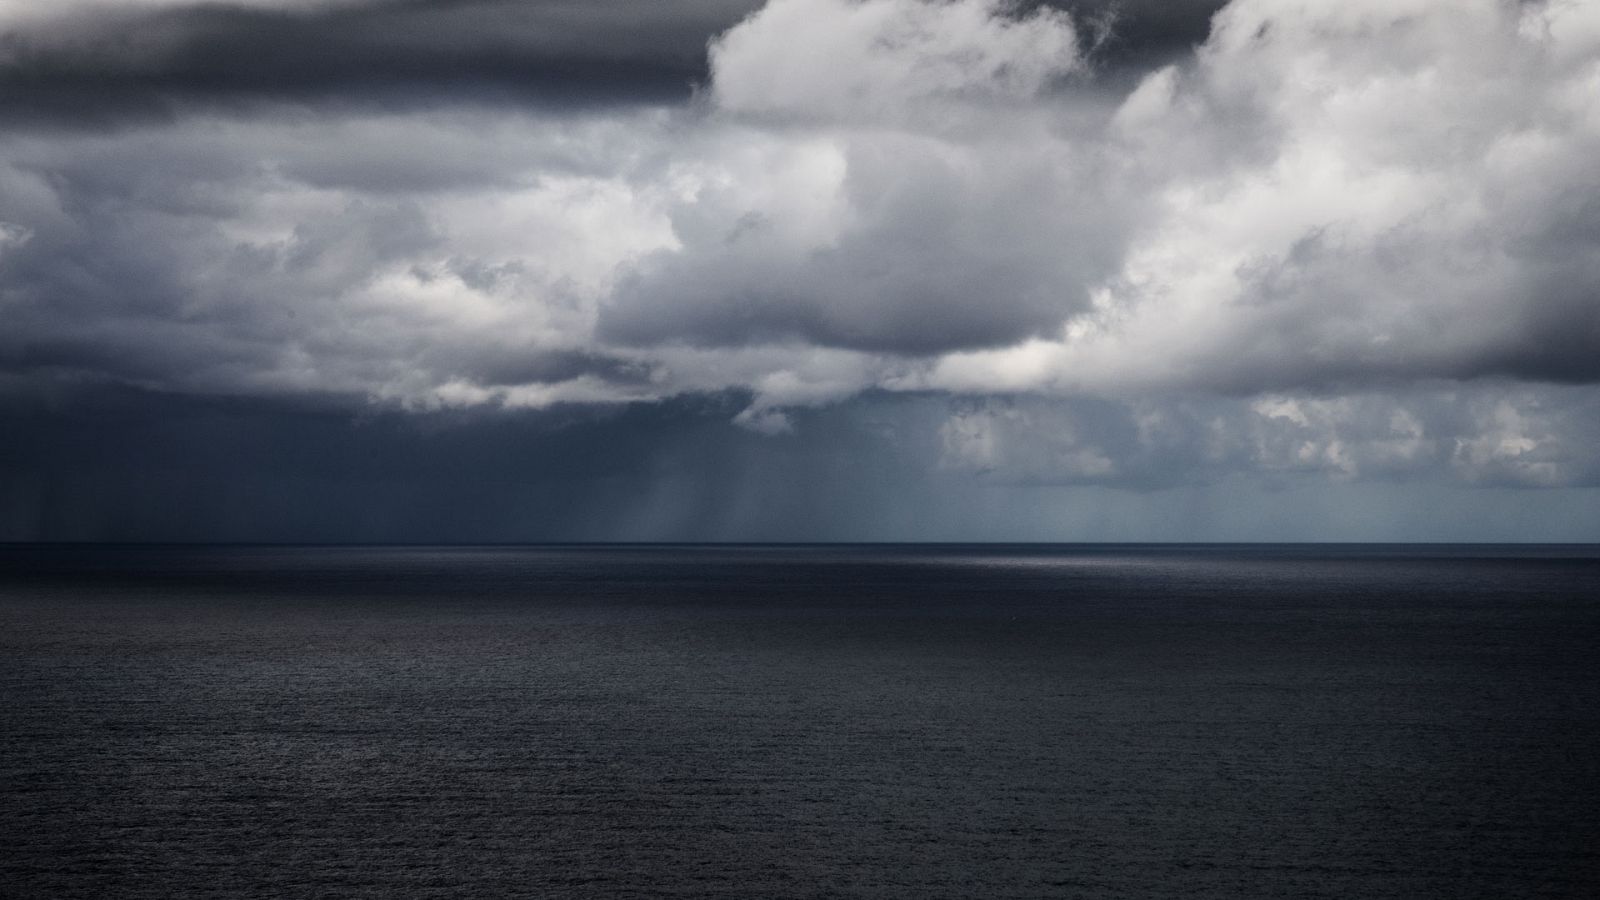 Un temporal en el área mediterránea y Baleares dejará lluvias intensas e inestabilidad - 02/12/19 - RTVE.es